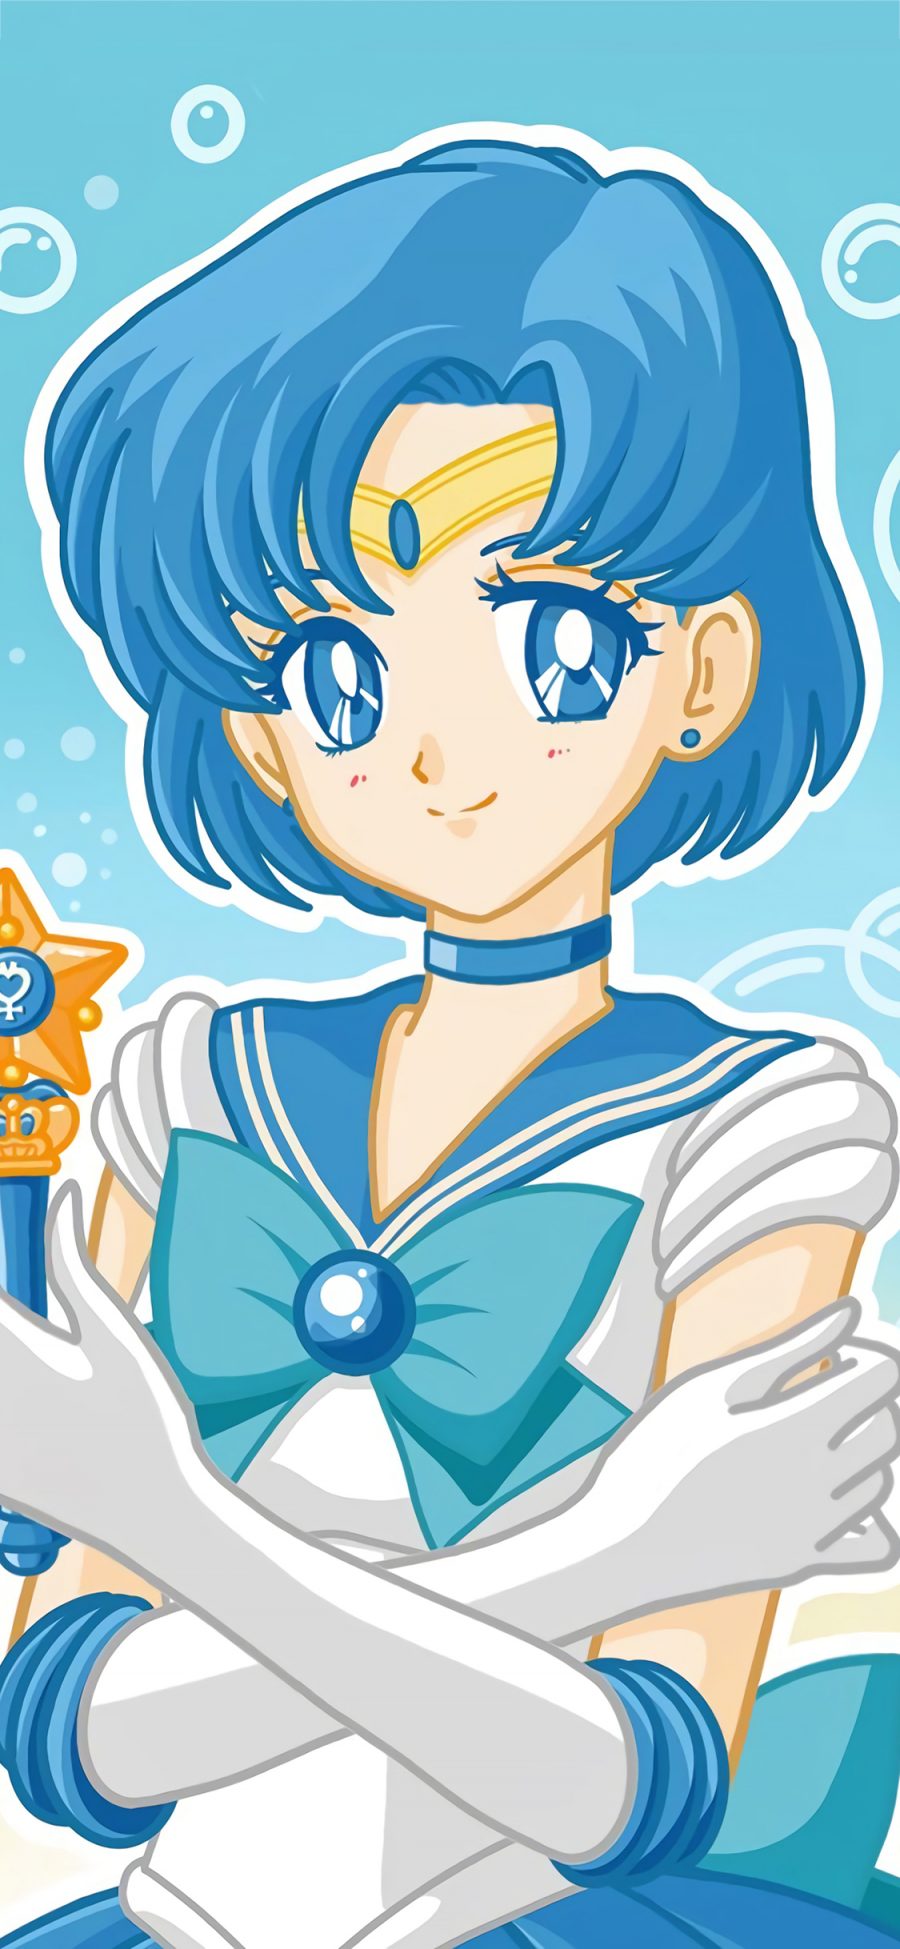 [2436×1125]美少女战士 水野亚美 蓝色 泡泡 动画 苹果手机动漫壁纸图片